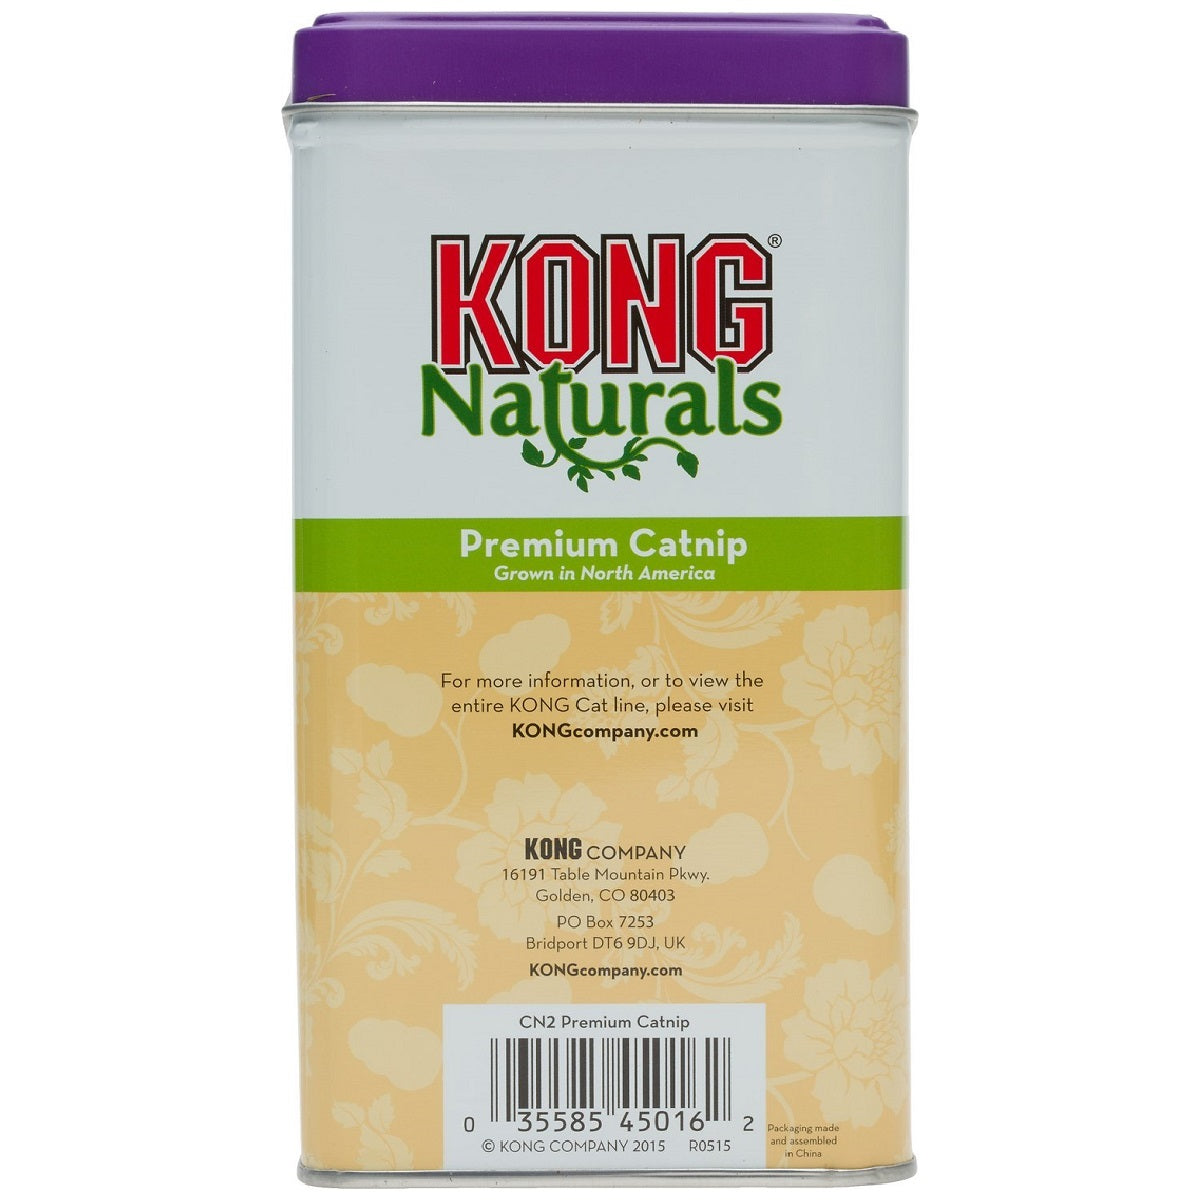 KONG - Naturals Premium Catnip (2oz)